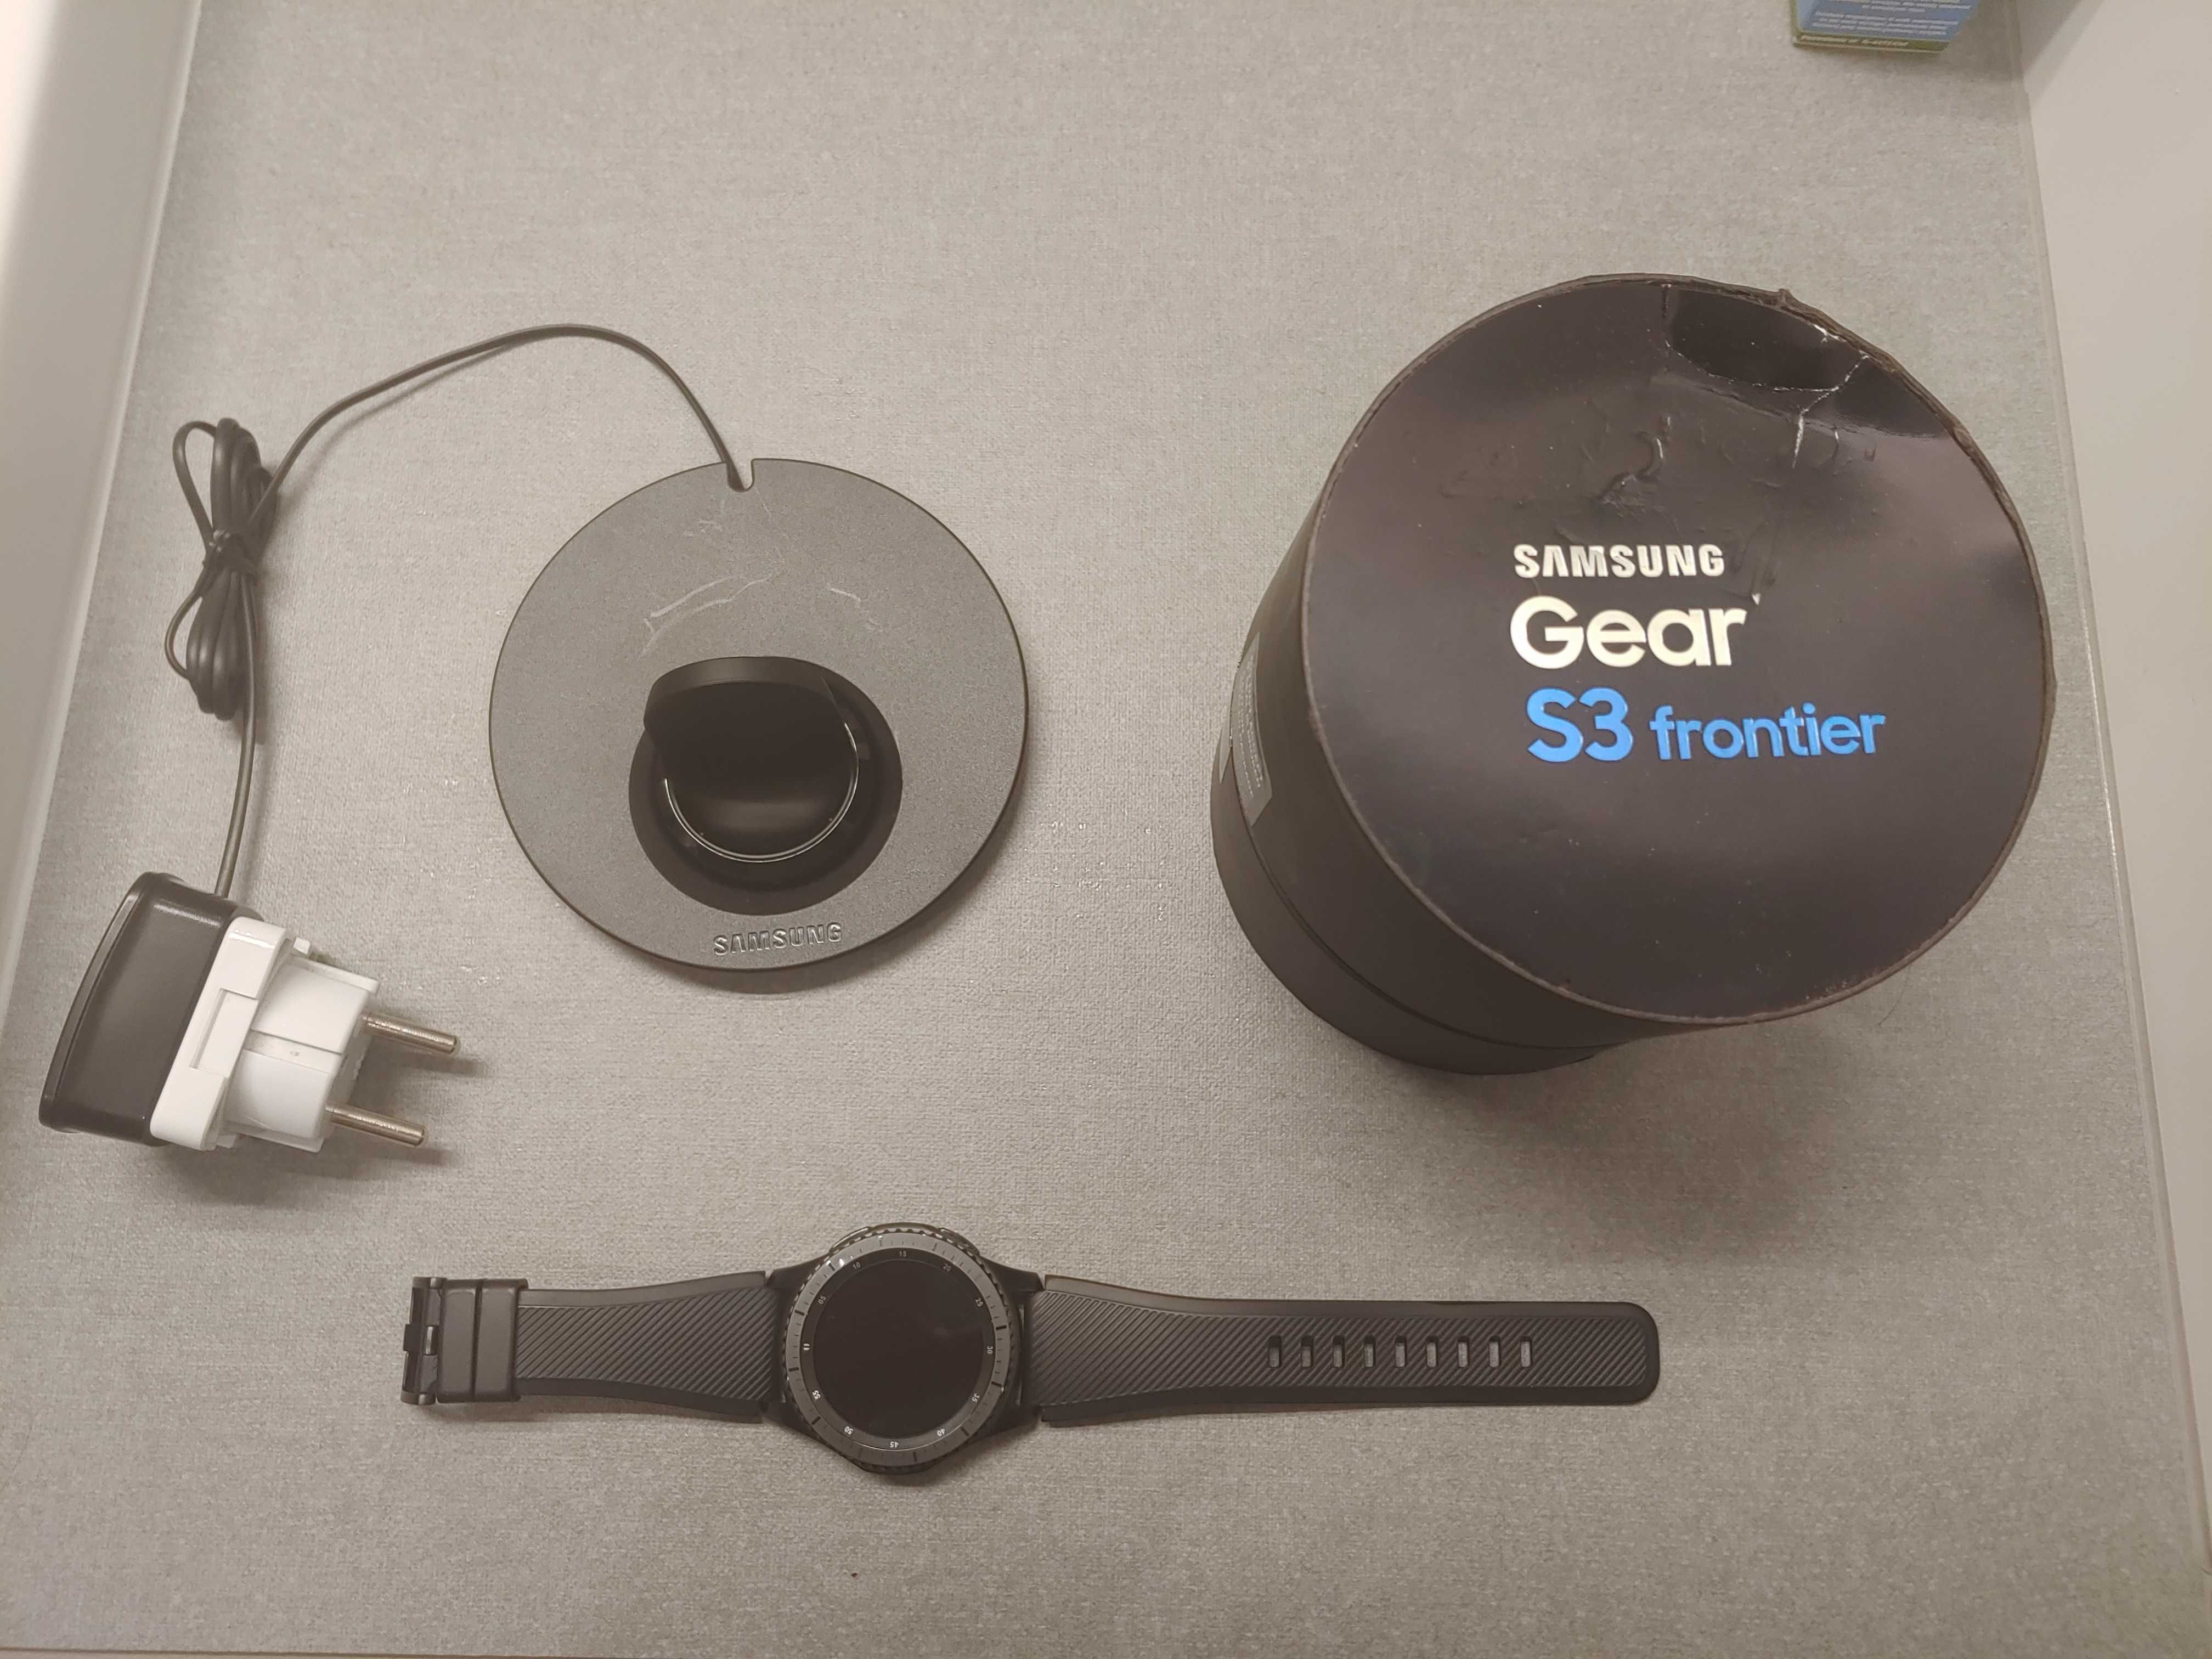 Samsung Gear S3 Fronter